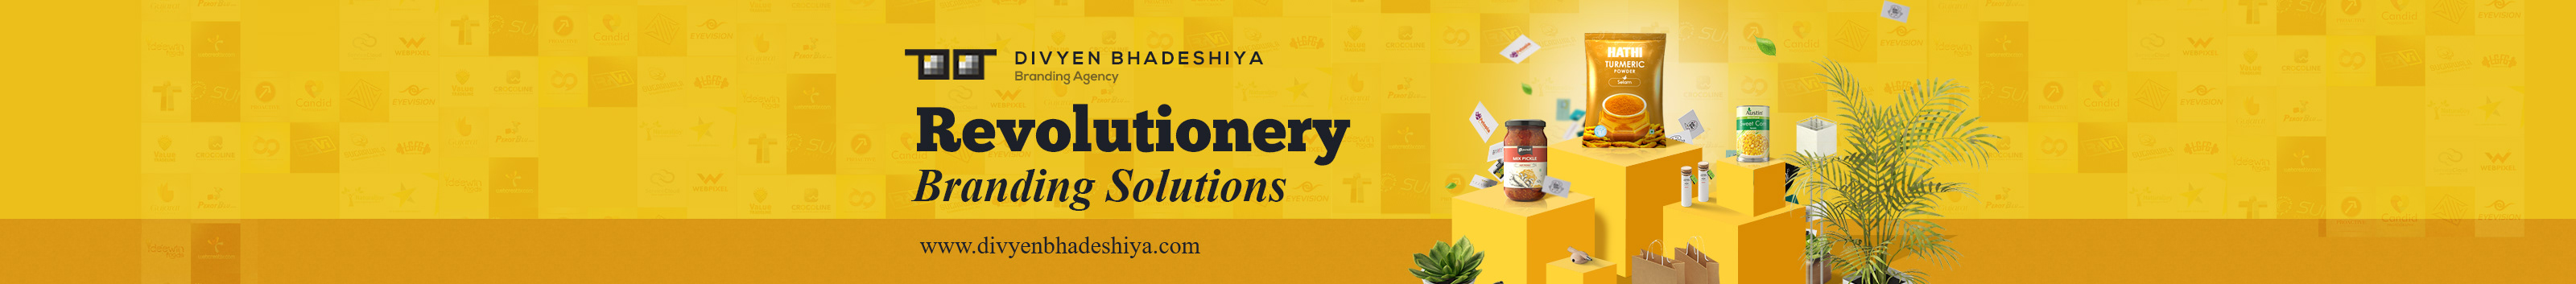 Divyen Bhadeshiya's profile banner